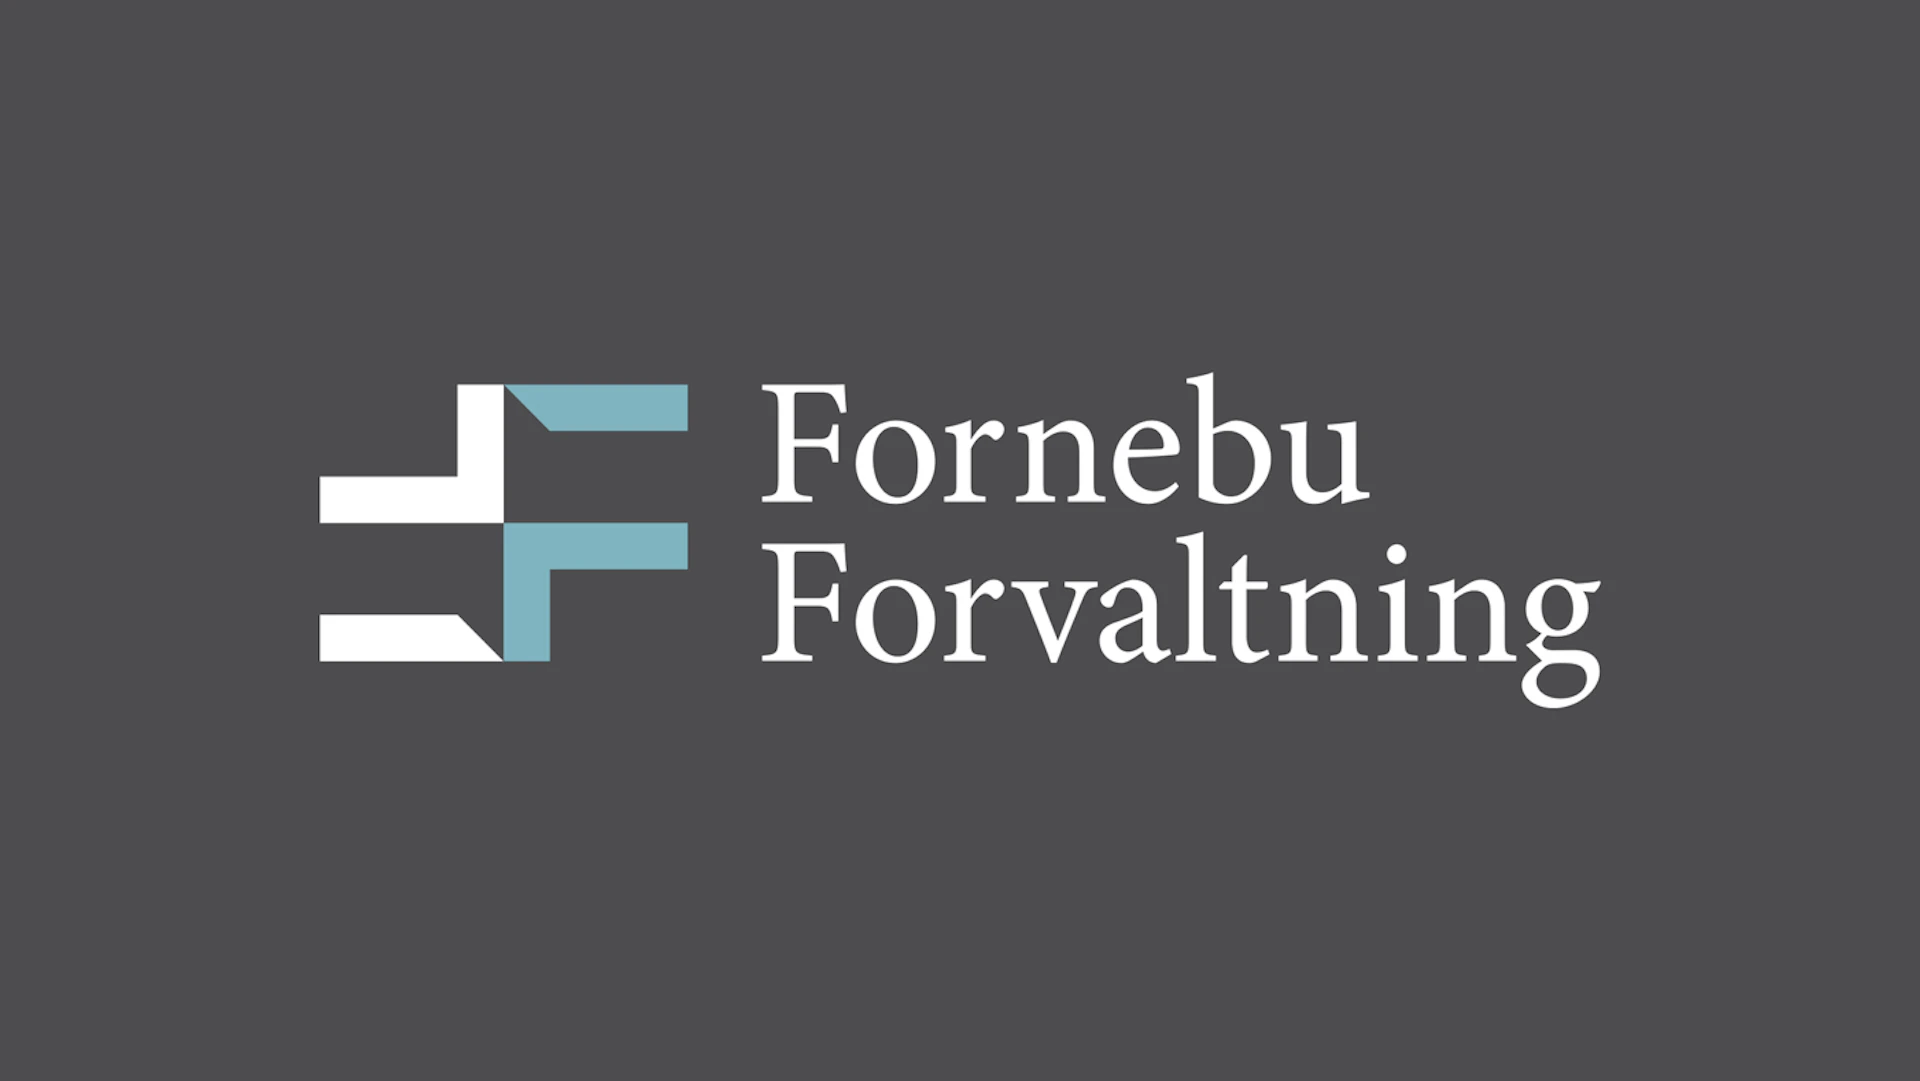 01 Fornebu forvaltning logo 1400x788